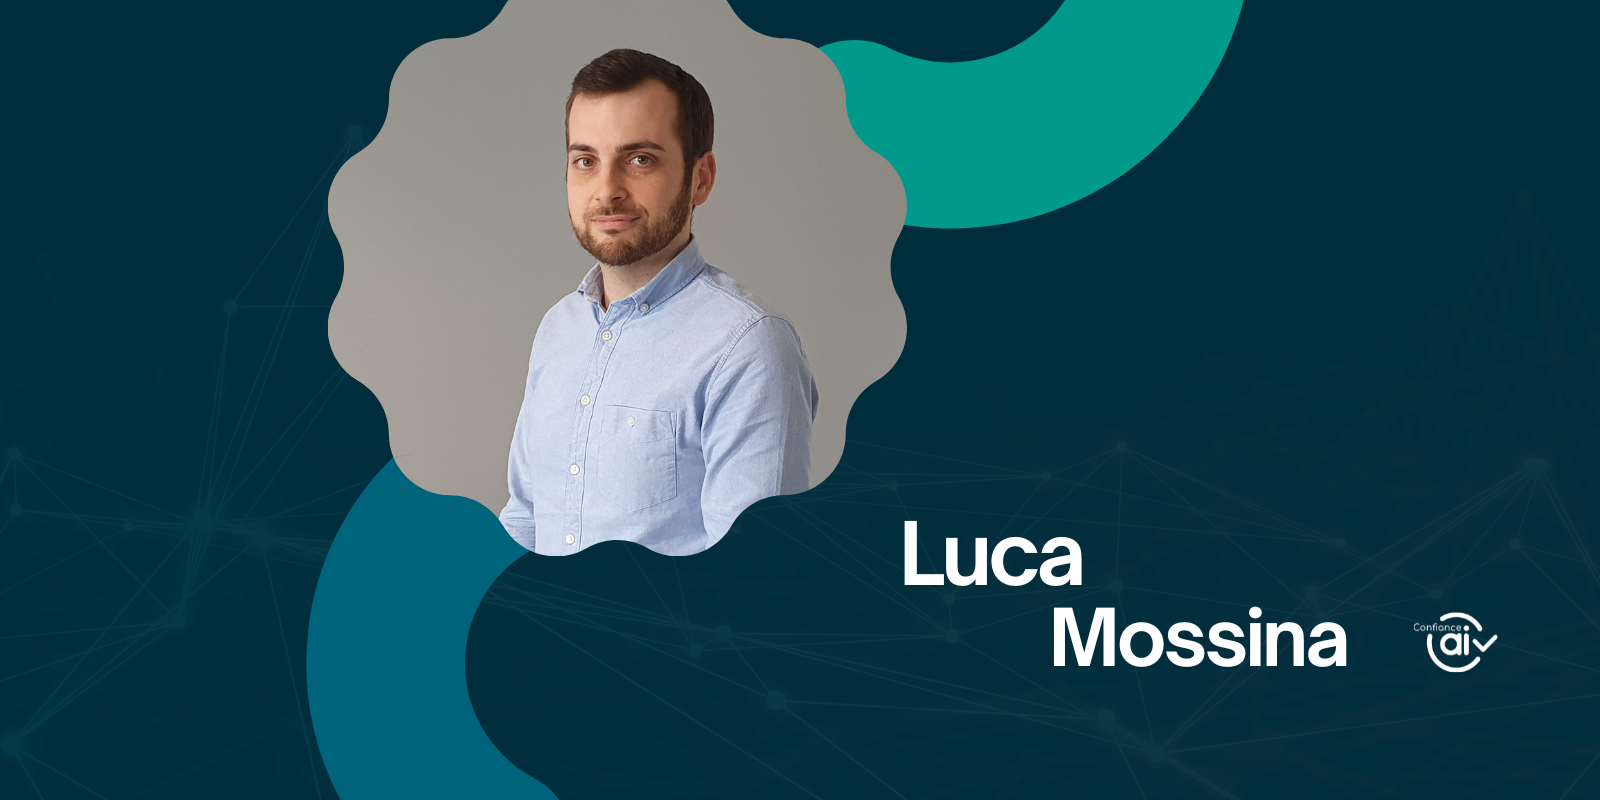 Portrait de Luca Mossina – ingénieur de recherche en IA